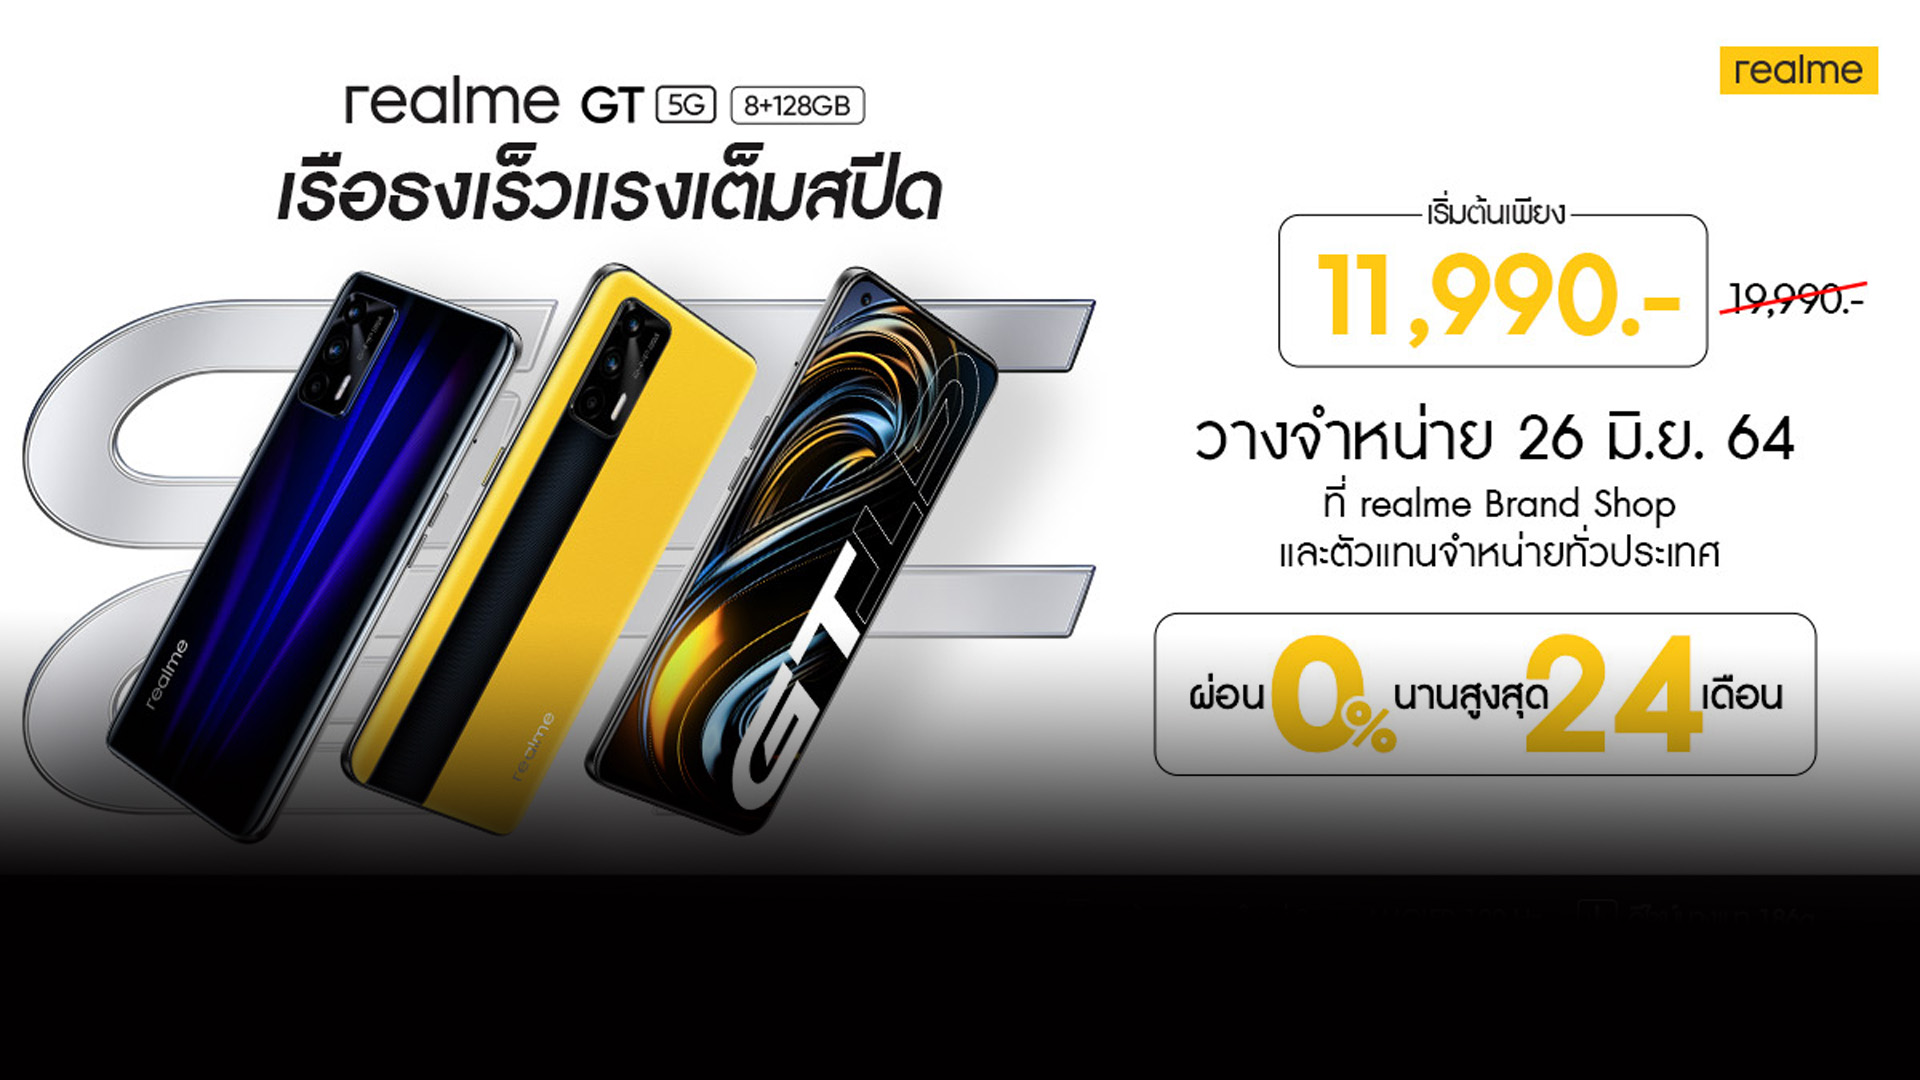 realme เตรียมวางจำหน่าย realme GT 5G ในราคาเริ่มต้น 11,990 บาท 26 มิถุนายนนี้